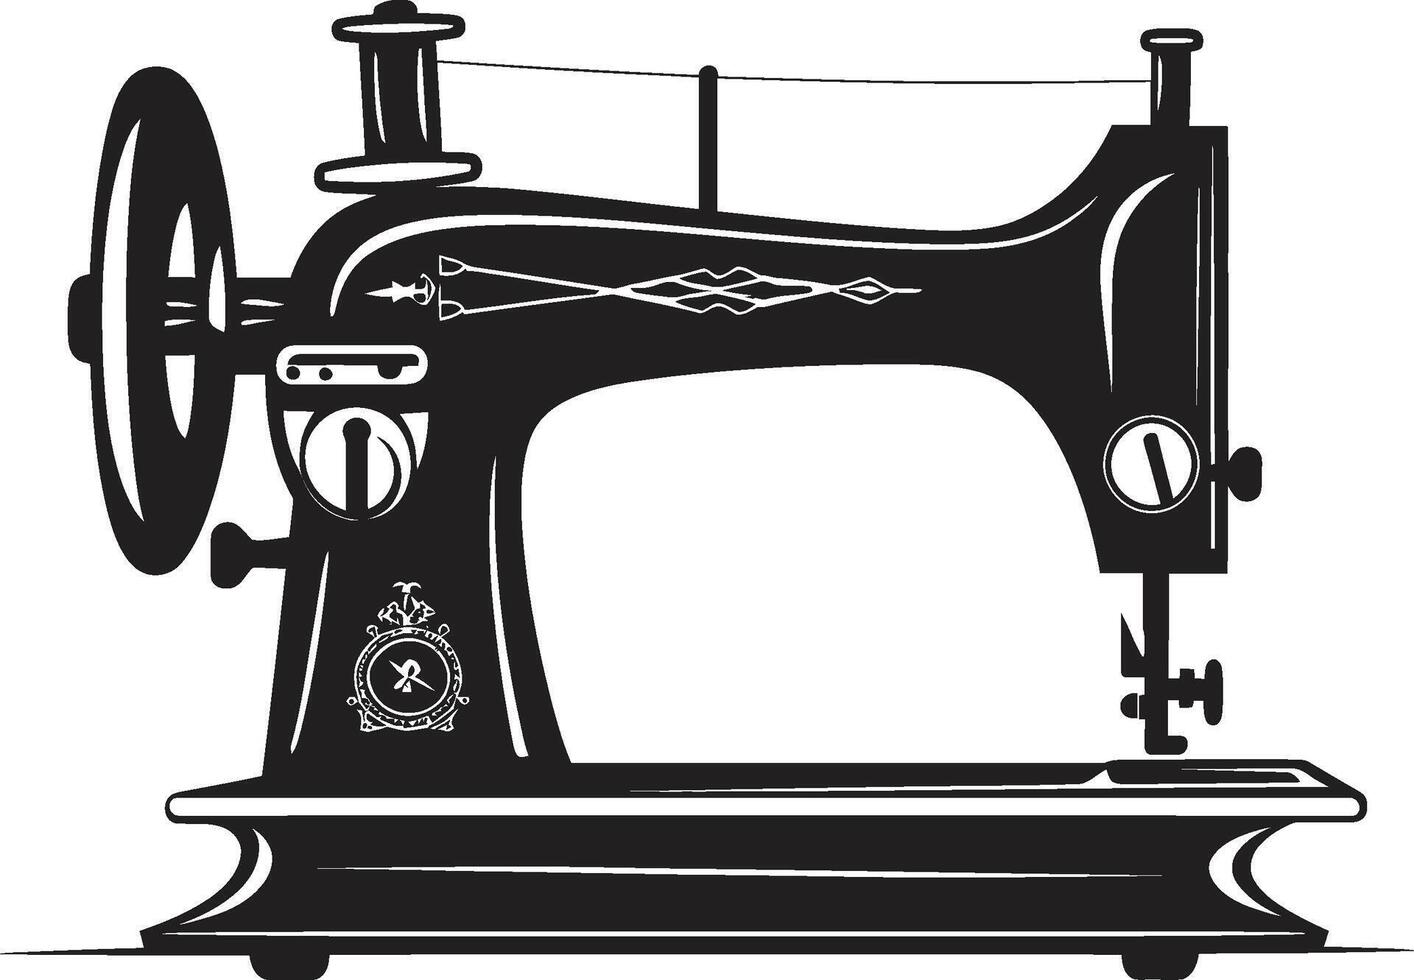 couture savoir-faire noir couture machine adapté fils élégant noir pour précision couture machine vecteur